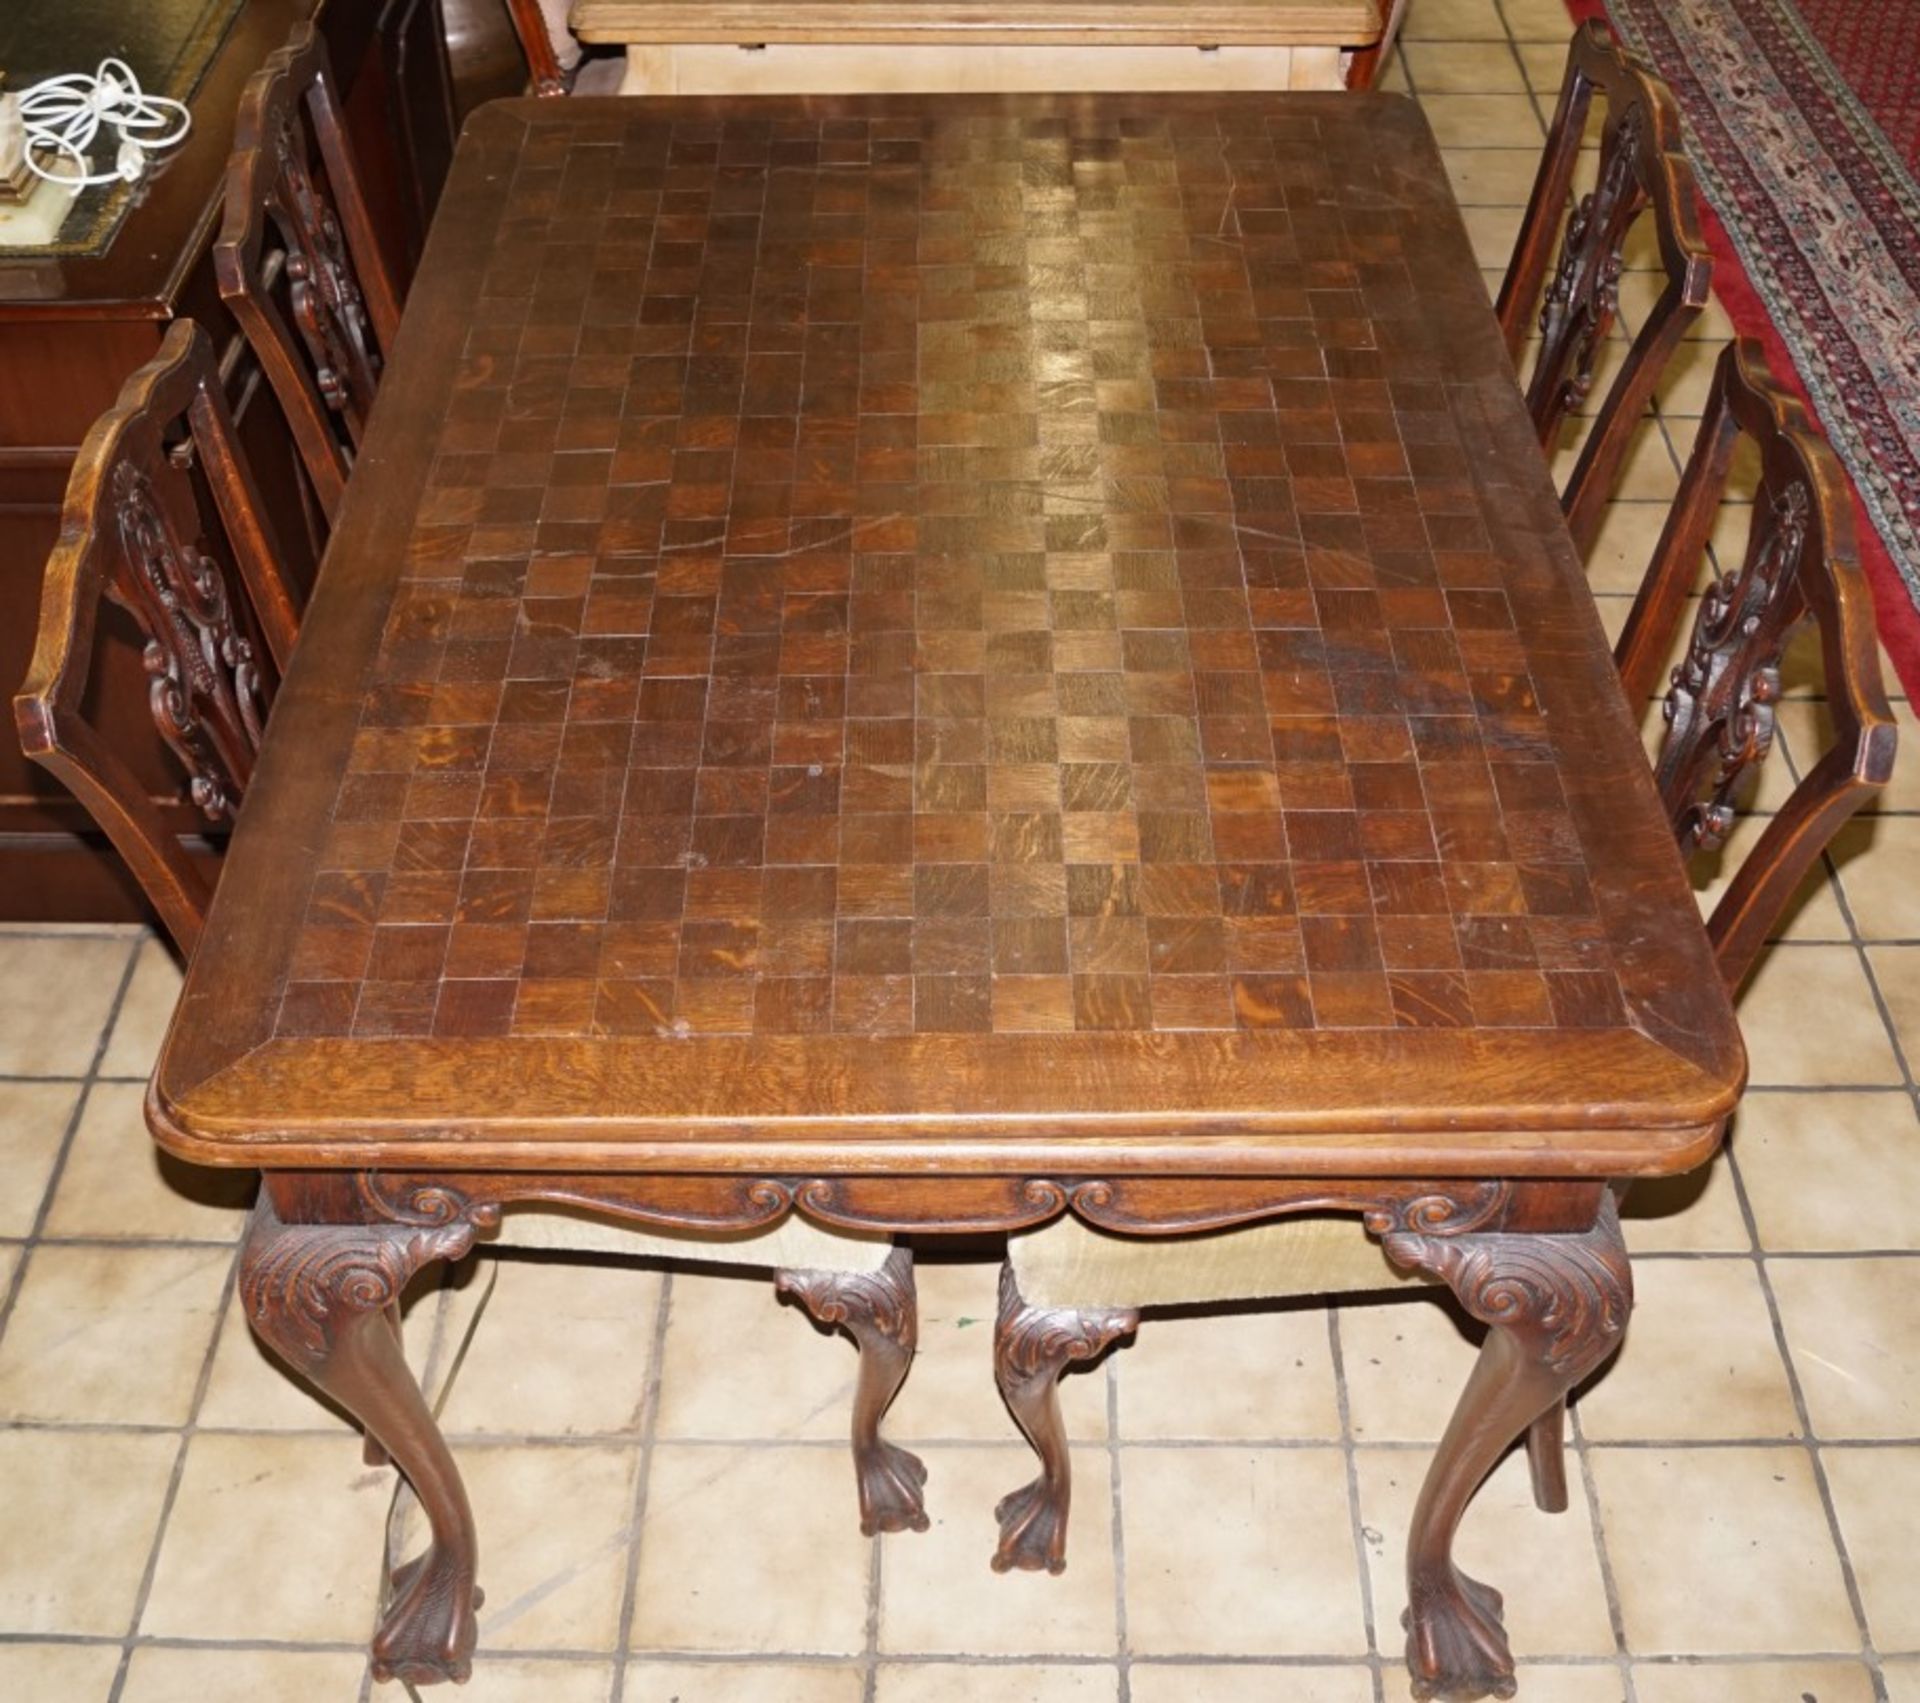 Tisch mit vier StühlenNussbaum, vier Stühle, Höhe des Tisches 74 cm x Breite 96 x Länge 127 cm, Höhe